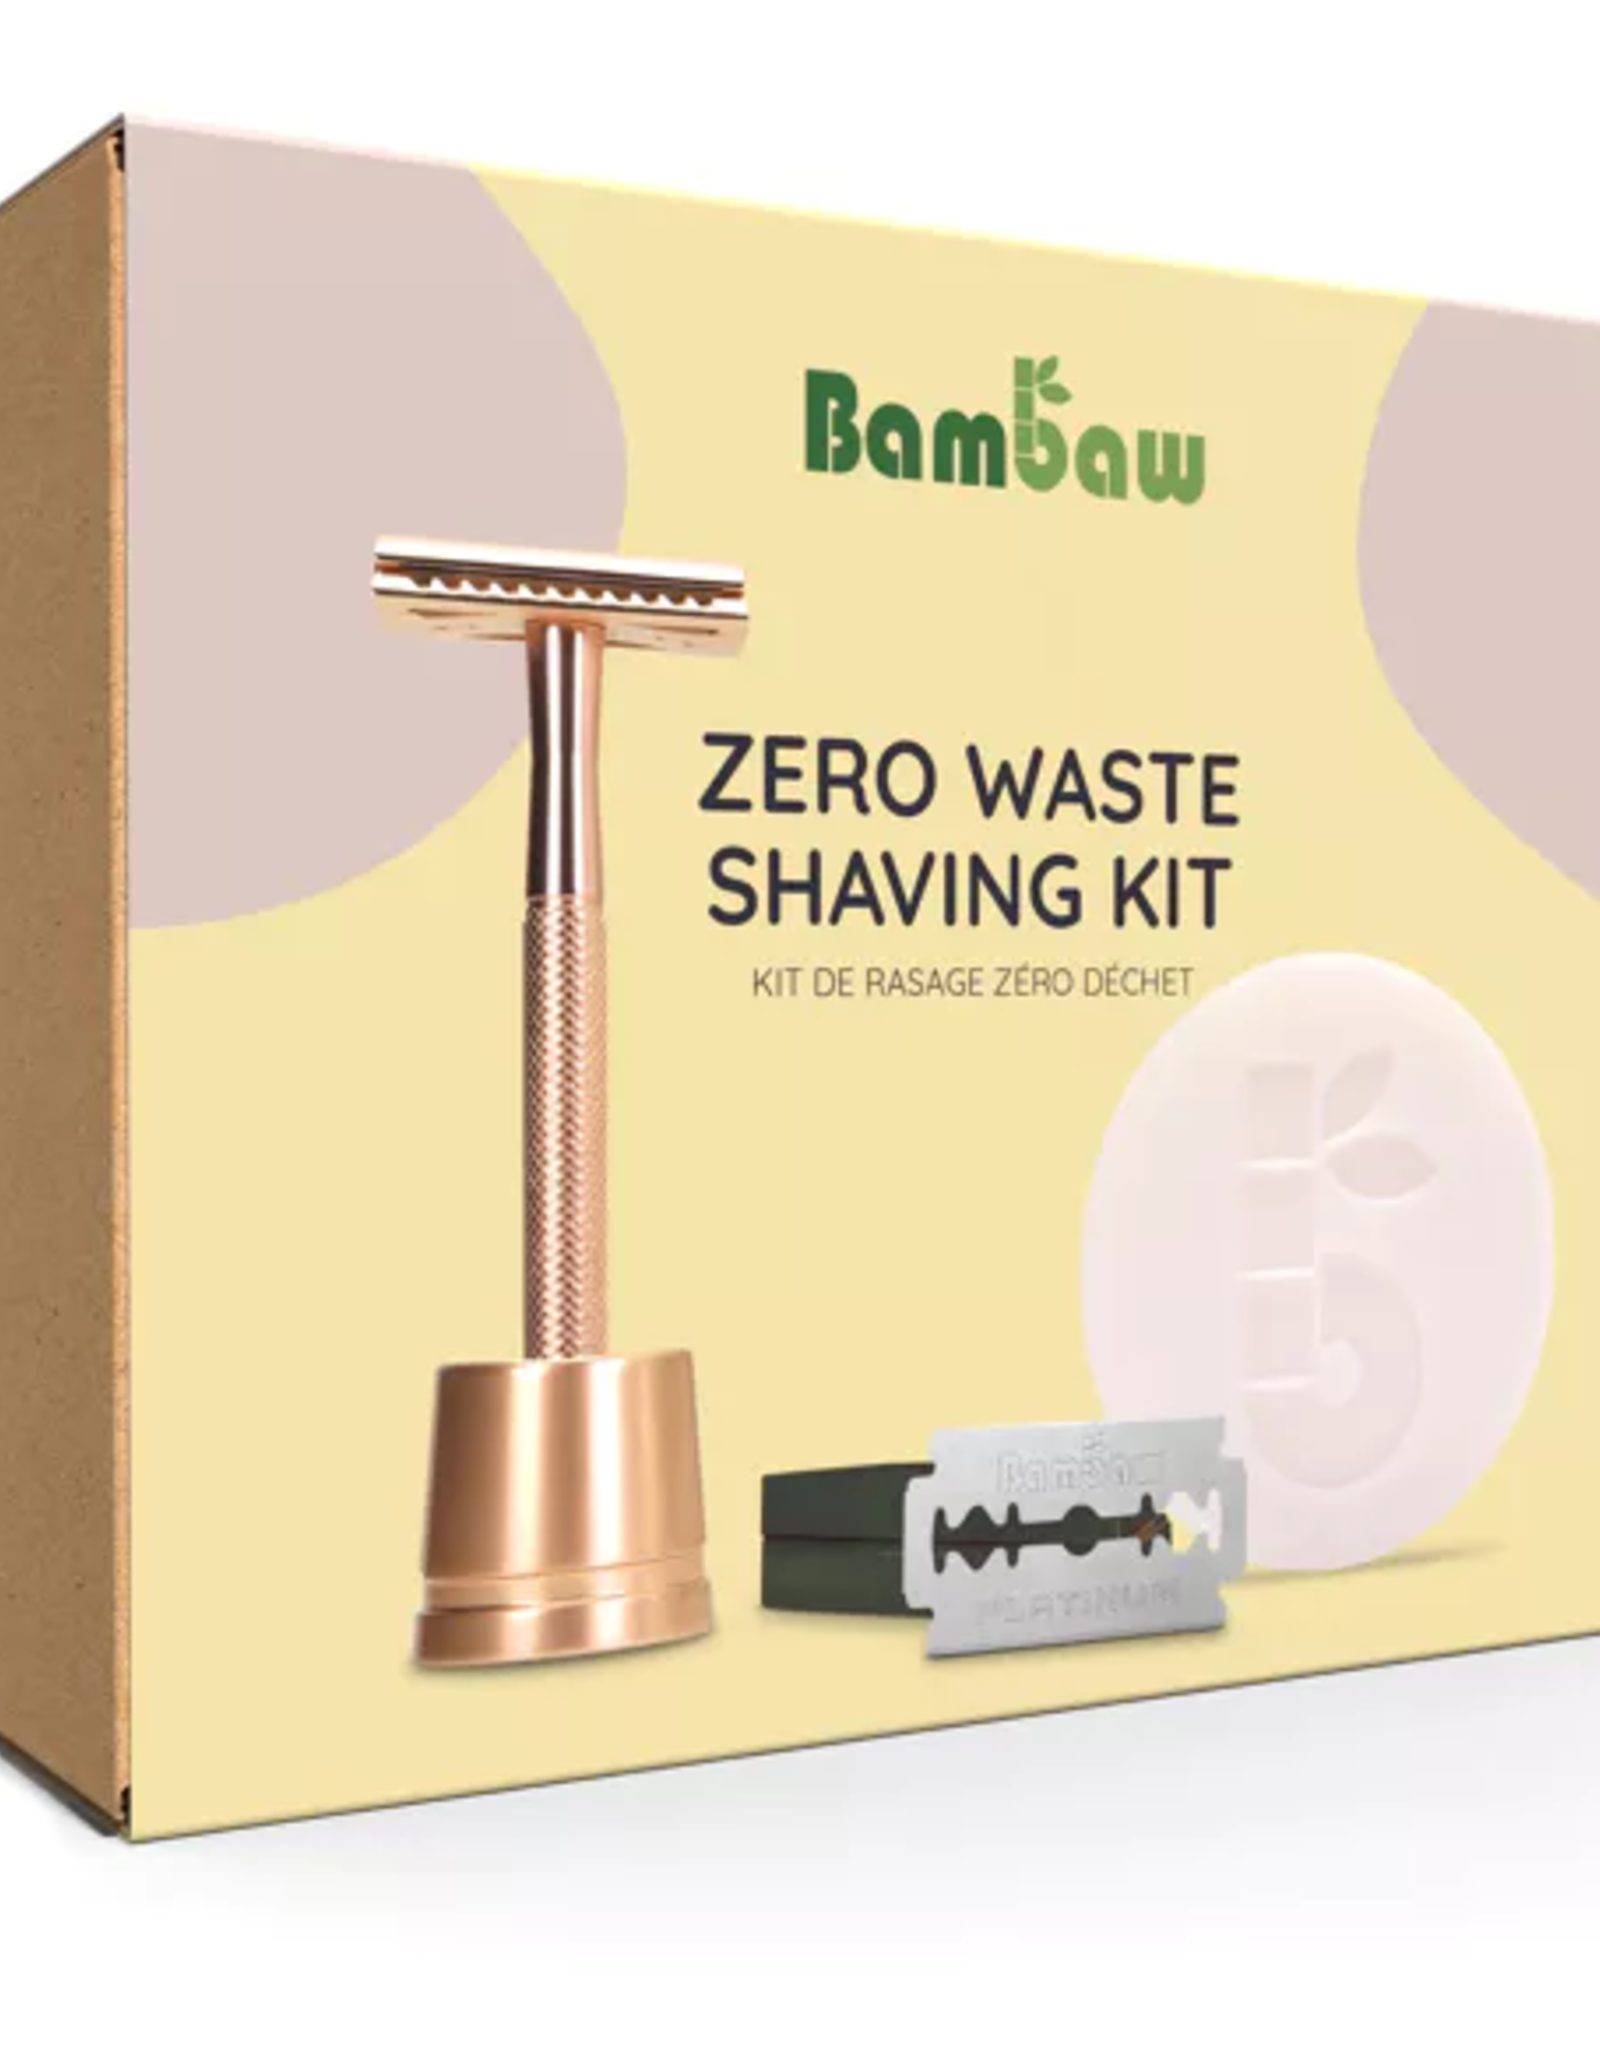 Bambaw Shaving set - Rose gold edition